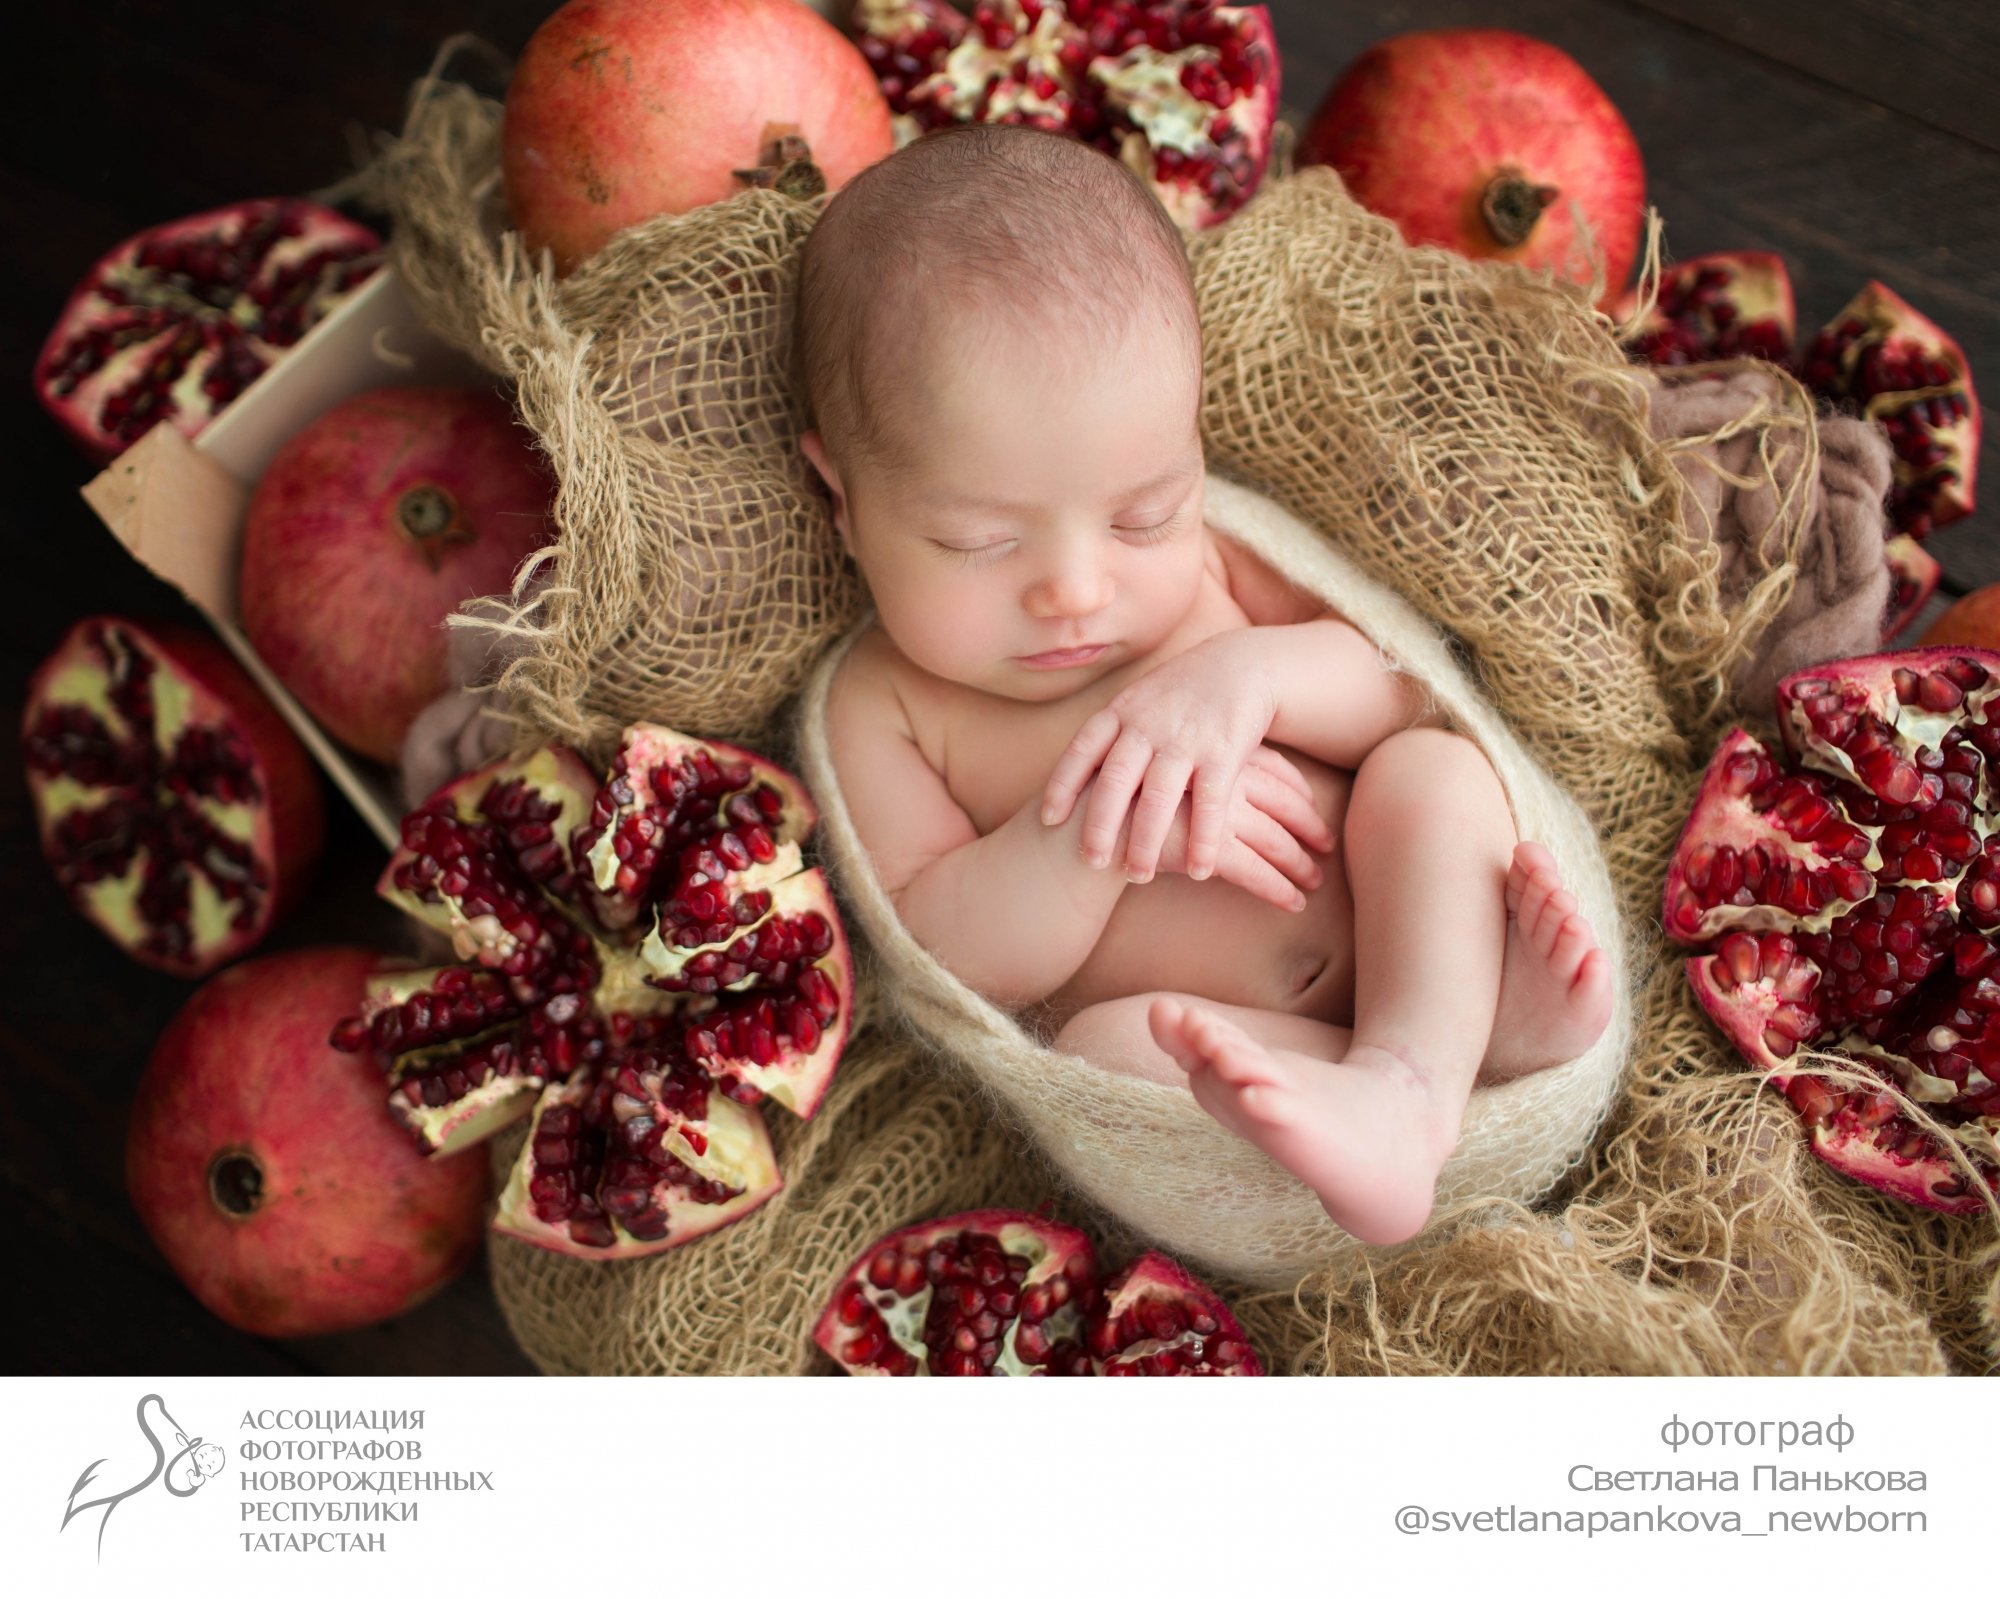 Челнинский фотограф участвует в трогательной newborn выставке в Казани. Фото